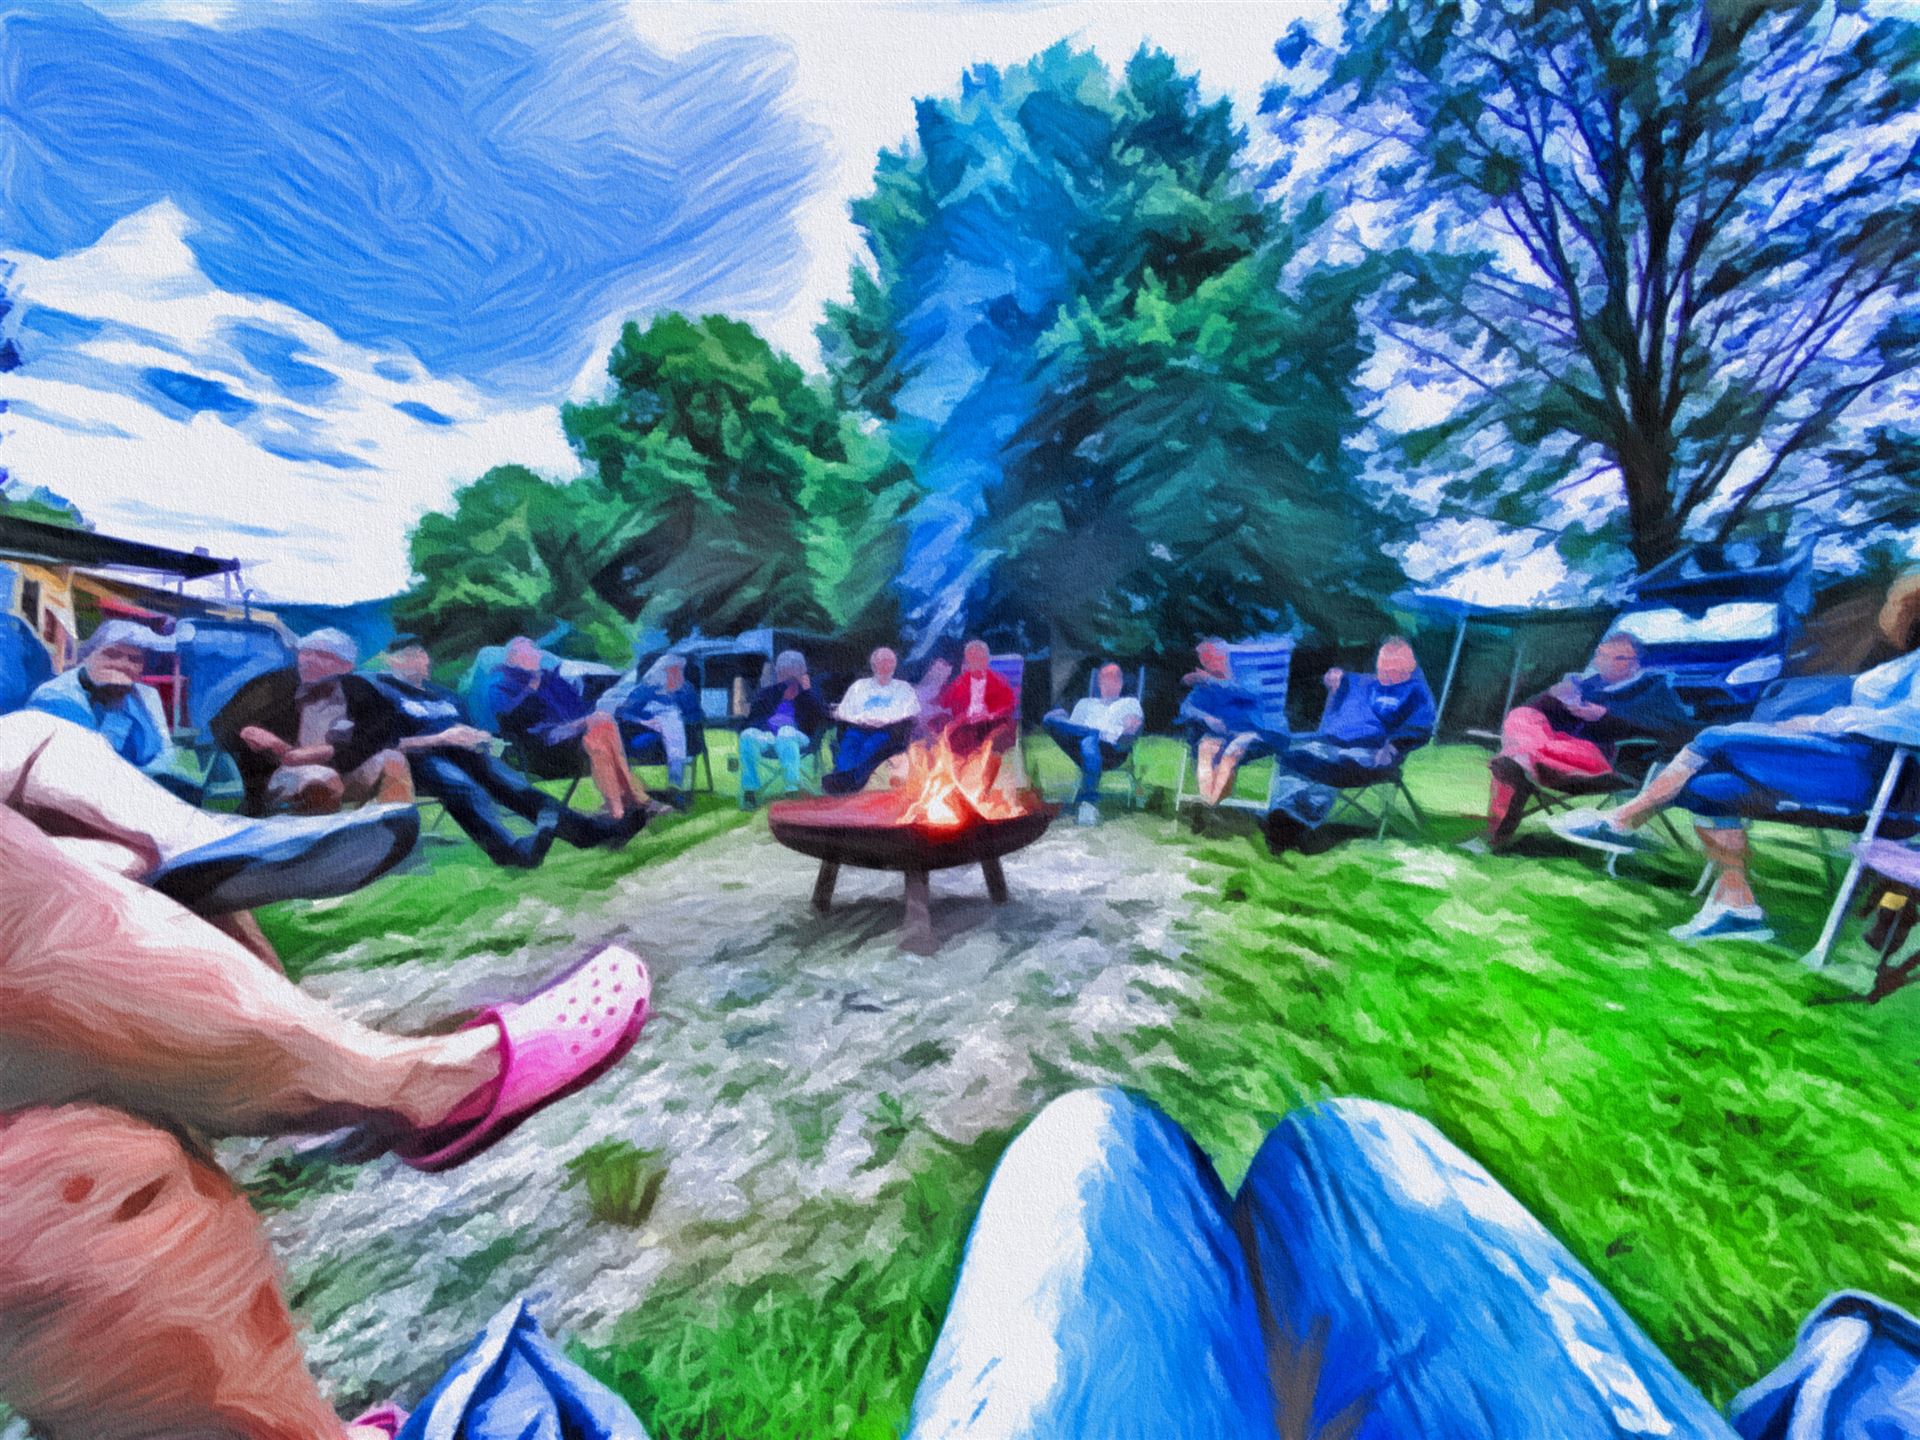 © autormobil.de | Camping mit dem Ford Nugget – Gemütliches Beisammensein